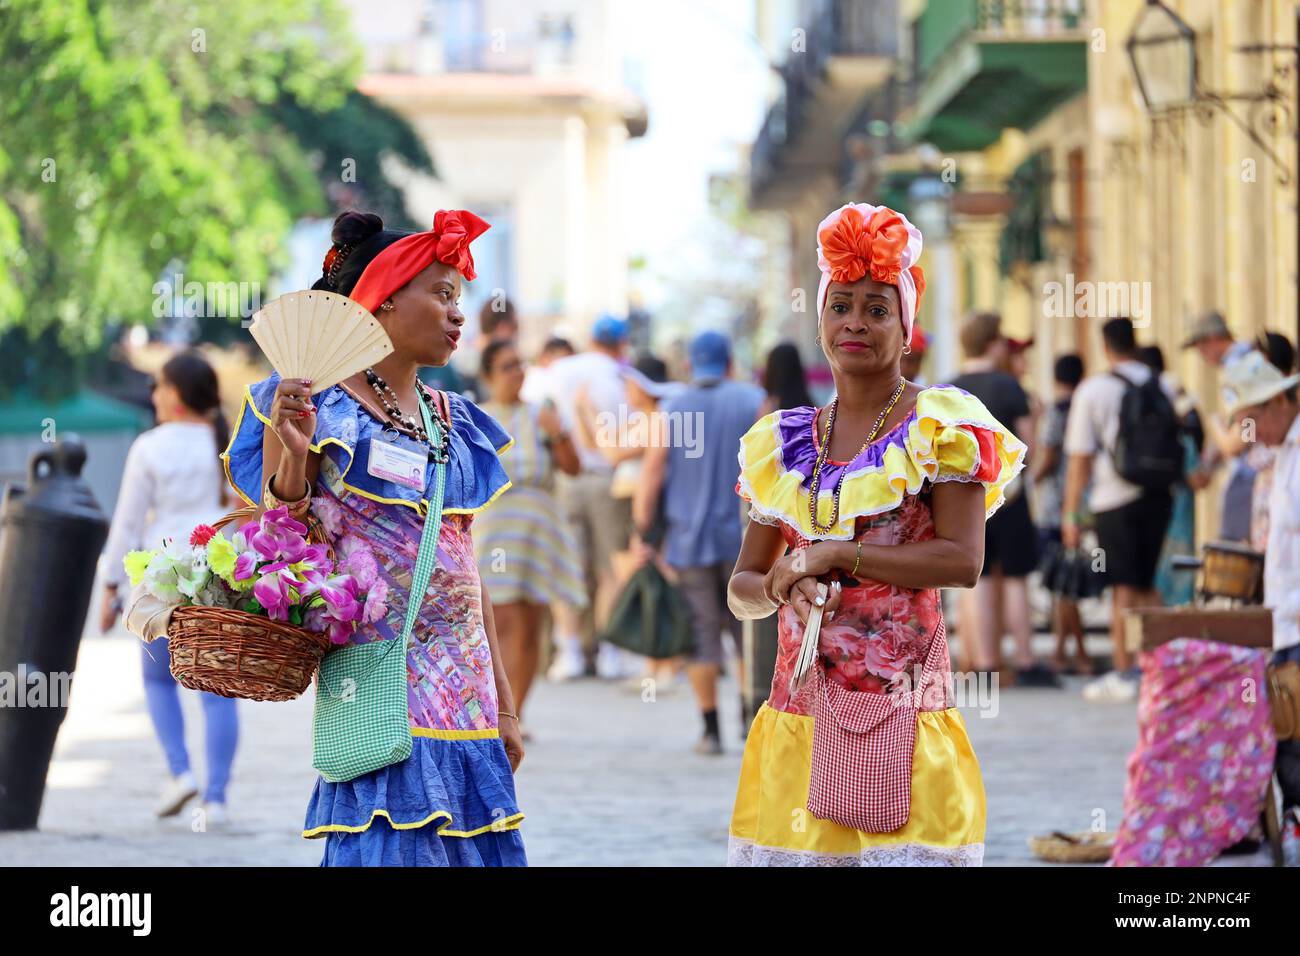 Le donne cubane in abiti tradizionali chiamati 'Costumbrista' mostrano i tempi coloniali sulla strada dell'Avana Vecchia su una folla di persone sullo sfondo Foto Stock